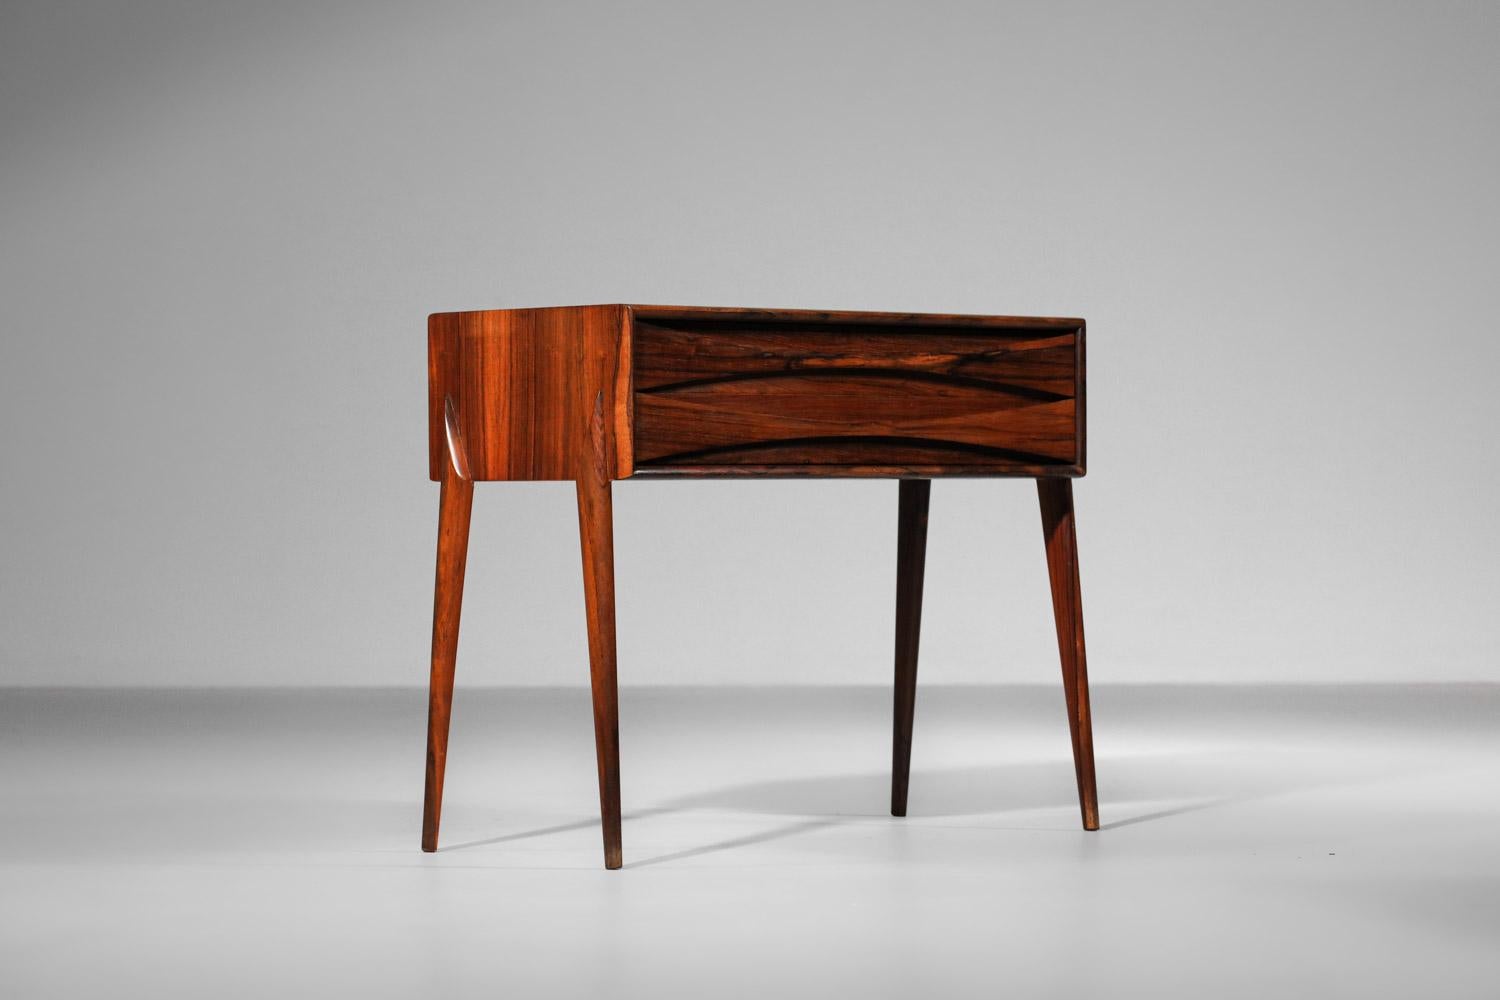 Nachttisch aus den 60er Jahren vom dänischen Designer Arne Vodder. Dieser Nachttisch ist vollständig aus massivem Rio-Palisanderholz gefertigt und furniert. Die beiden Schubladen sind mit durchgehenden Holzgriffen versehen. Nüchternes, aufgeräumtes